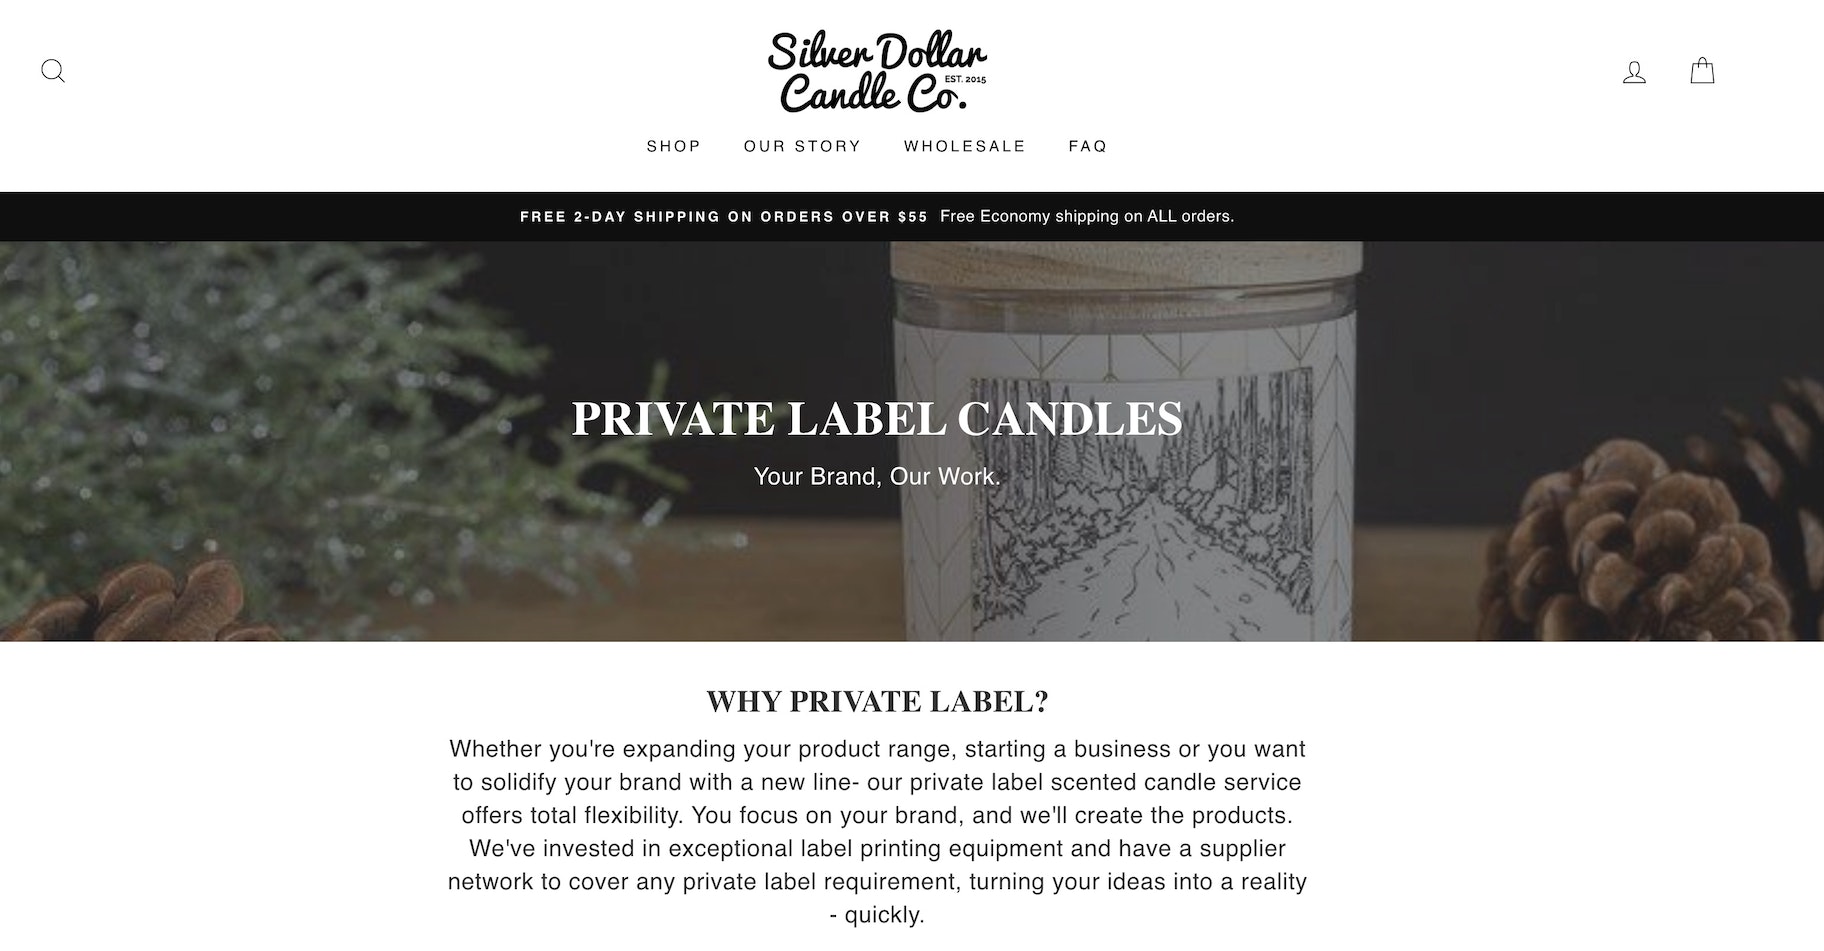 自有品牌蜡烛制造商:银元蜡烛有限公司。